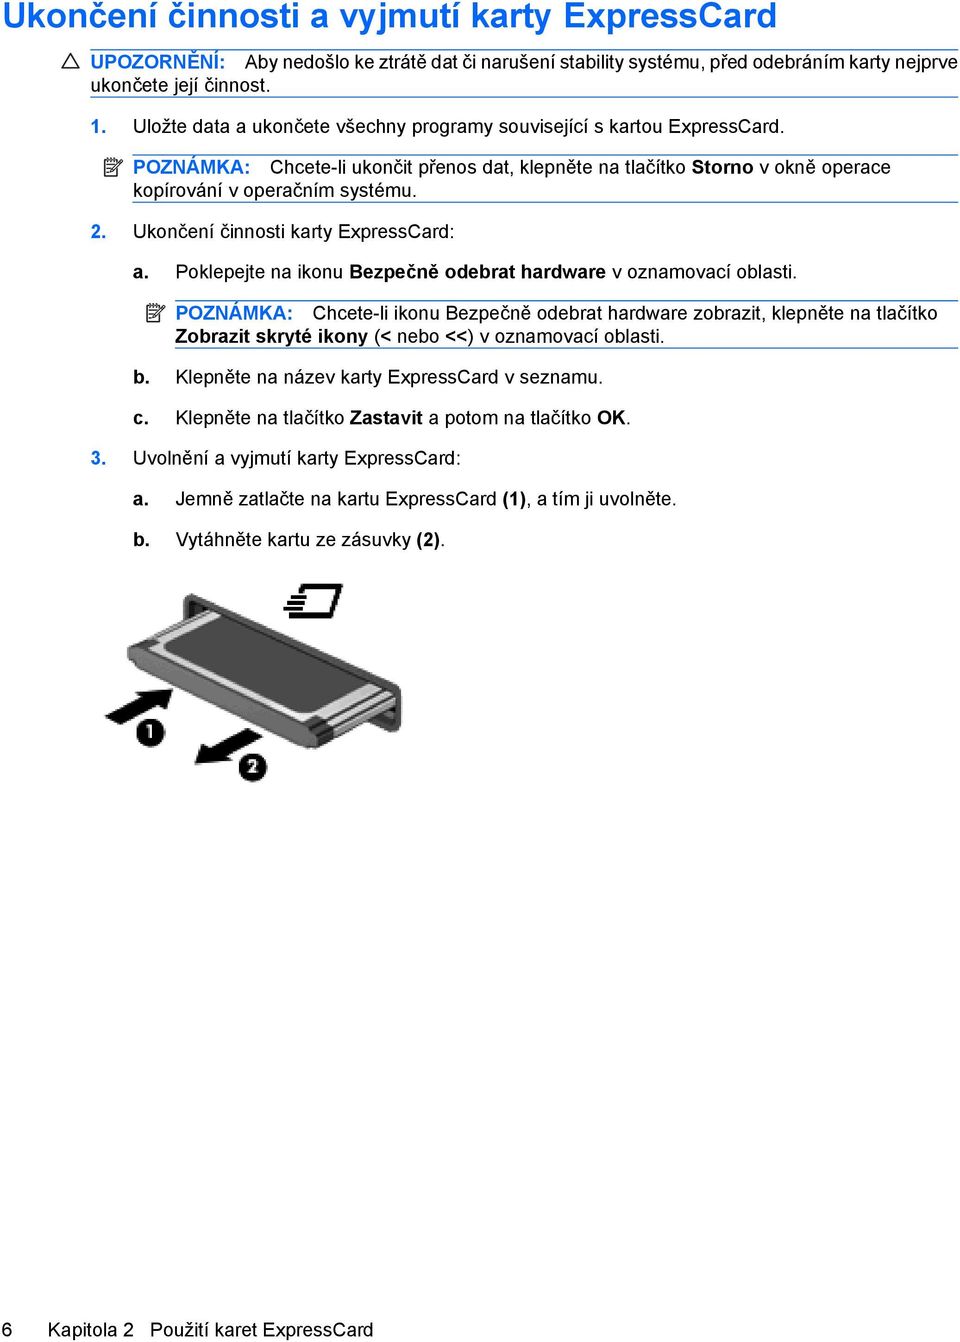 Ukončení činnosti karty ExpressCard: a. Poklepejte na ikonu Bezpečně odebrat hardware v oznamovací oblasti.